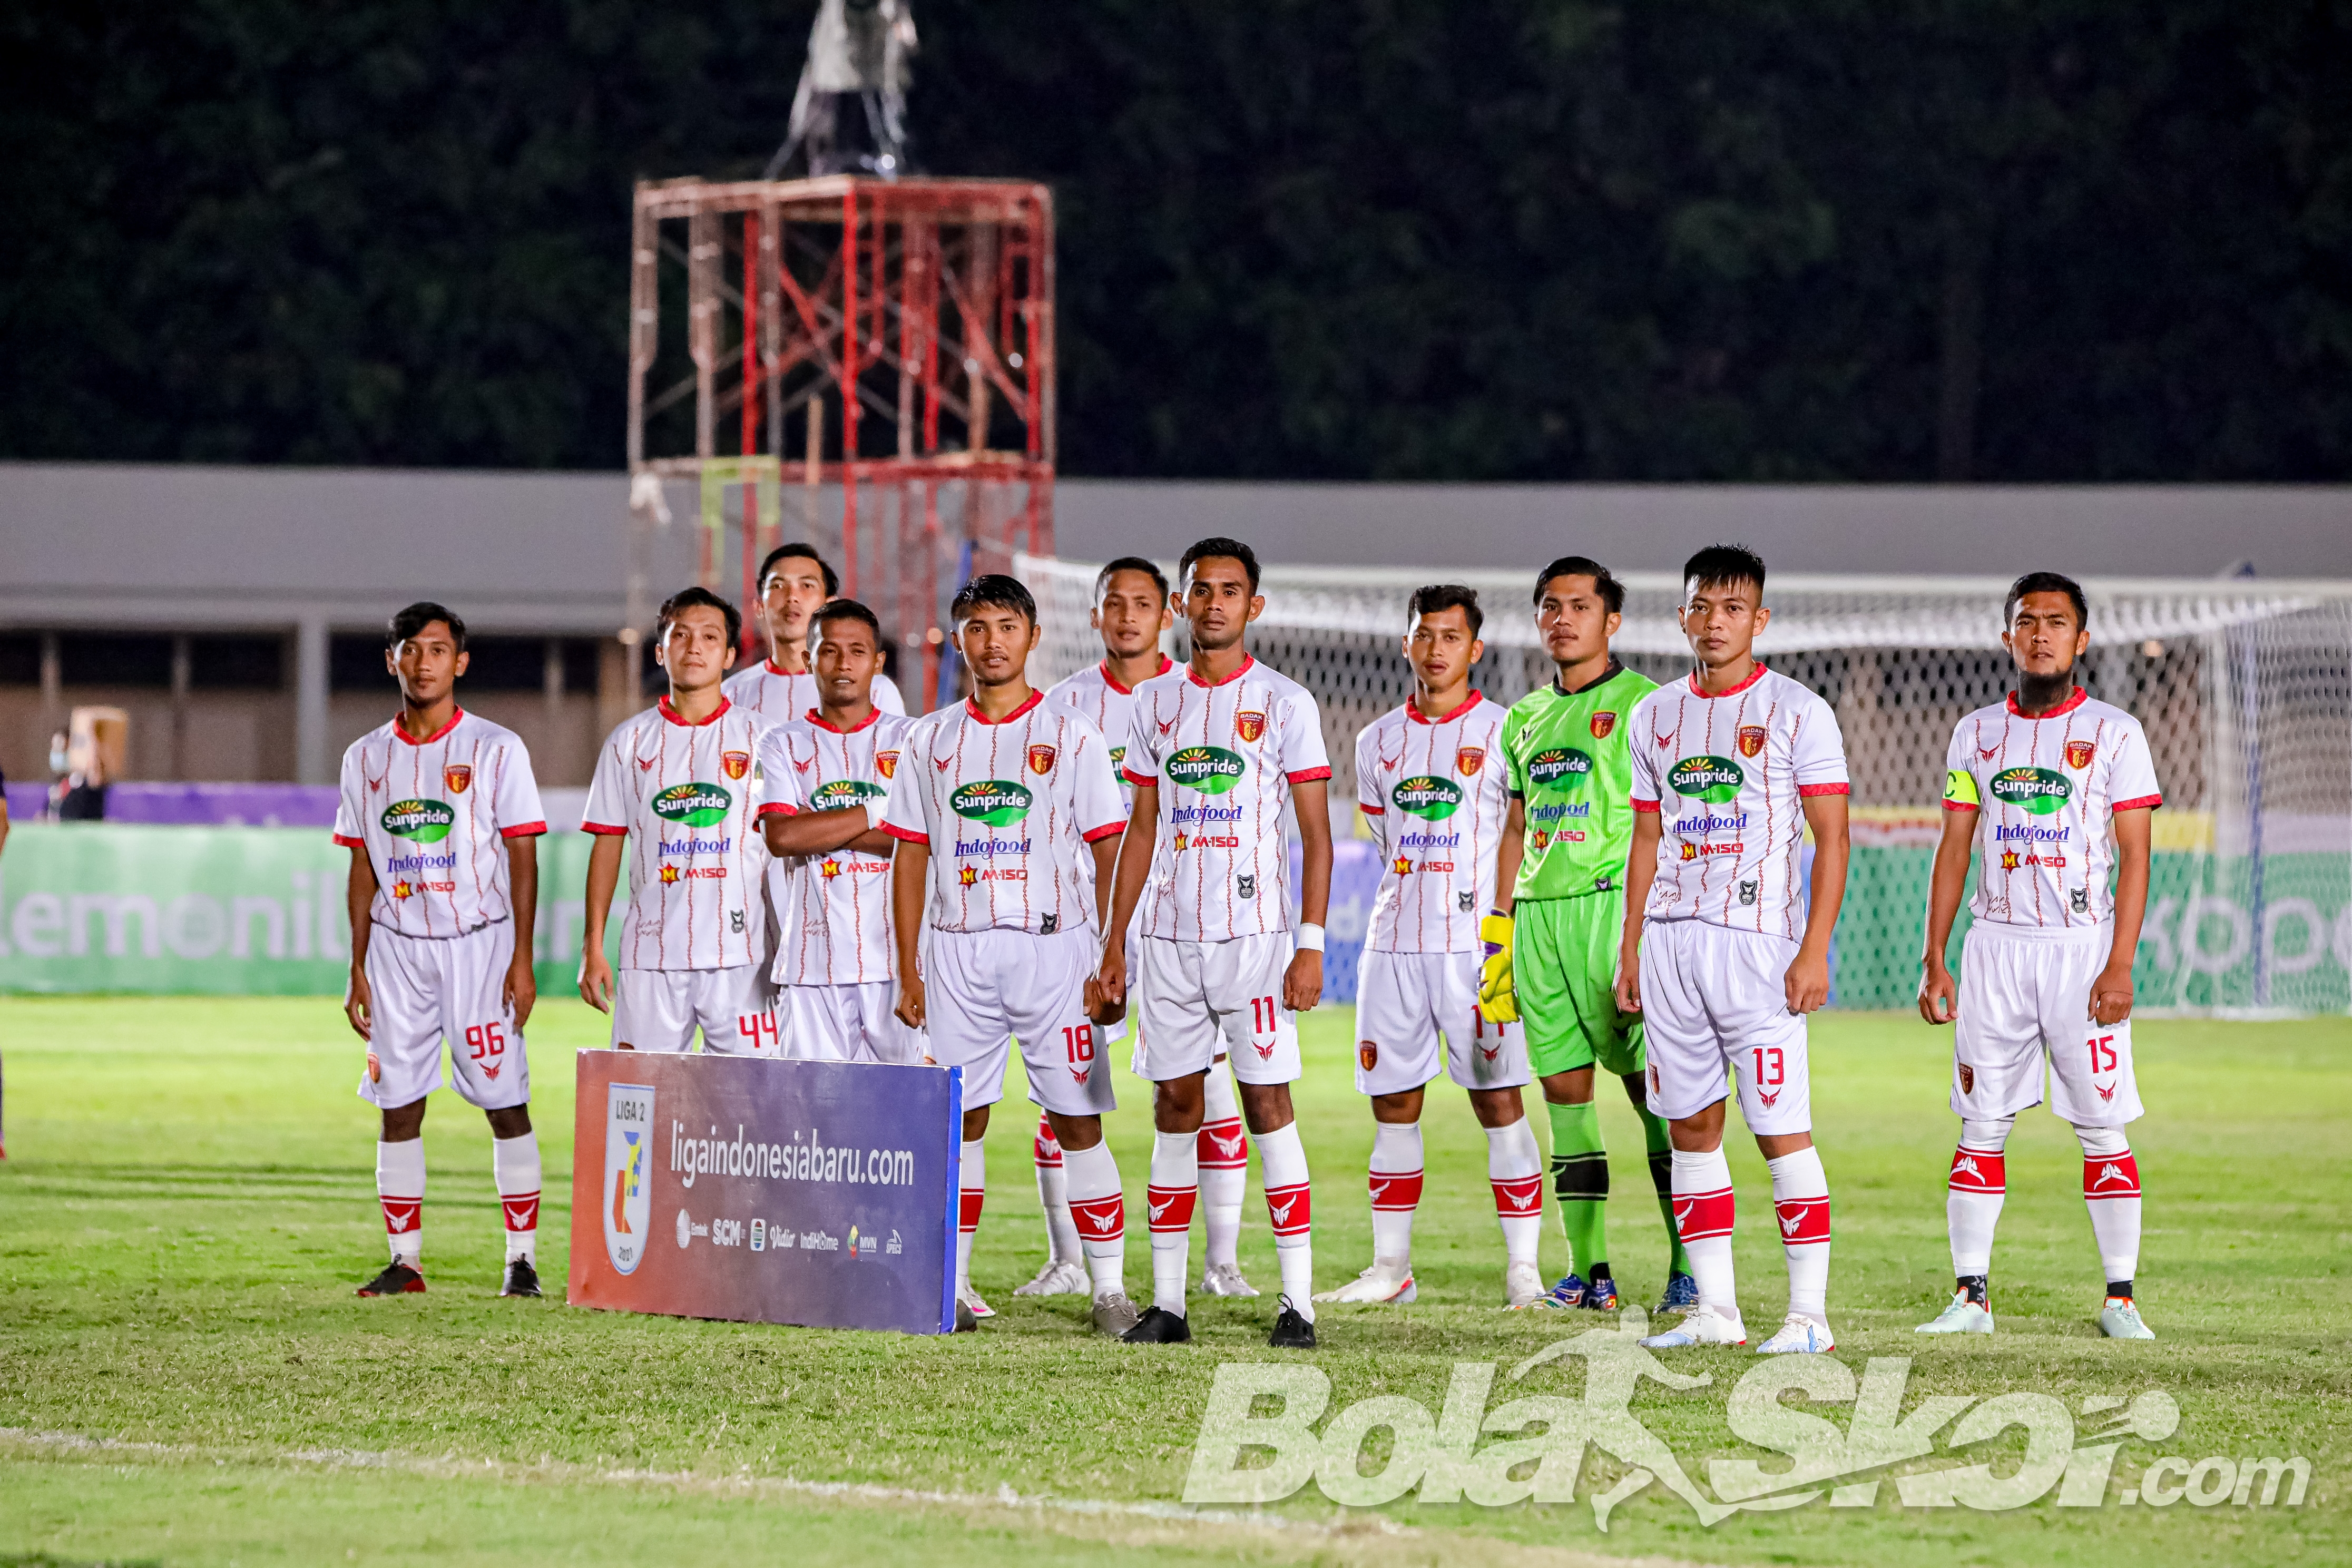 Badak Lampung FC